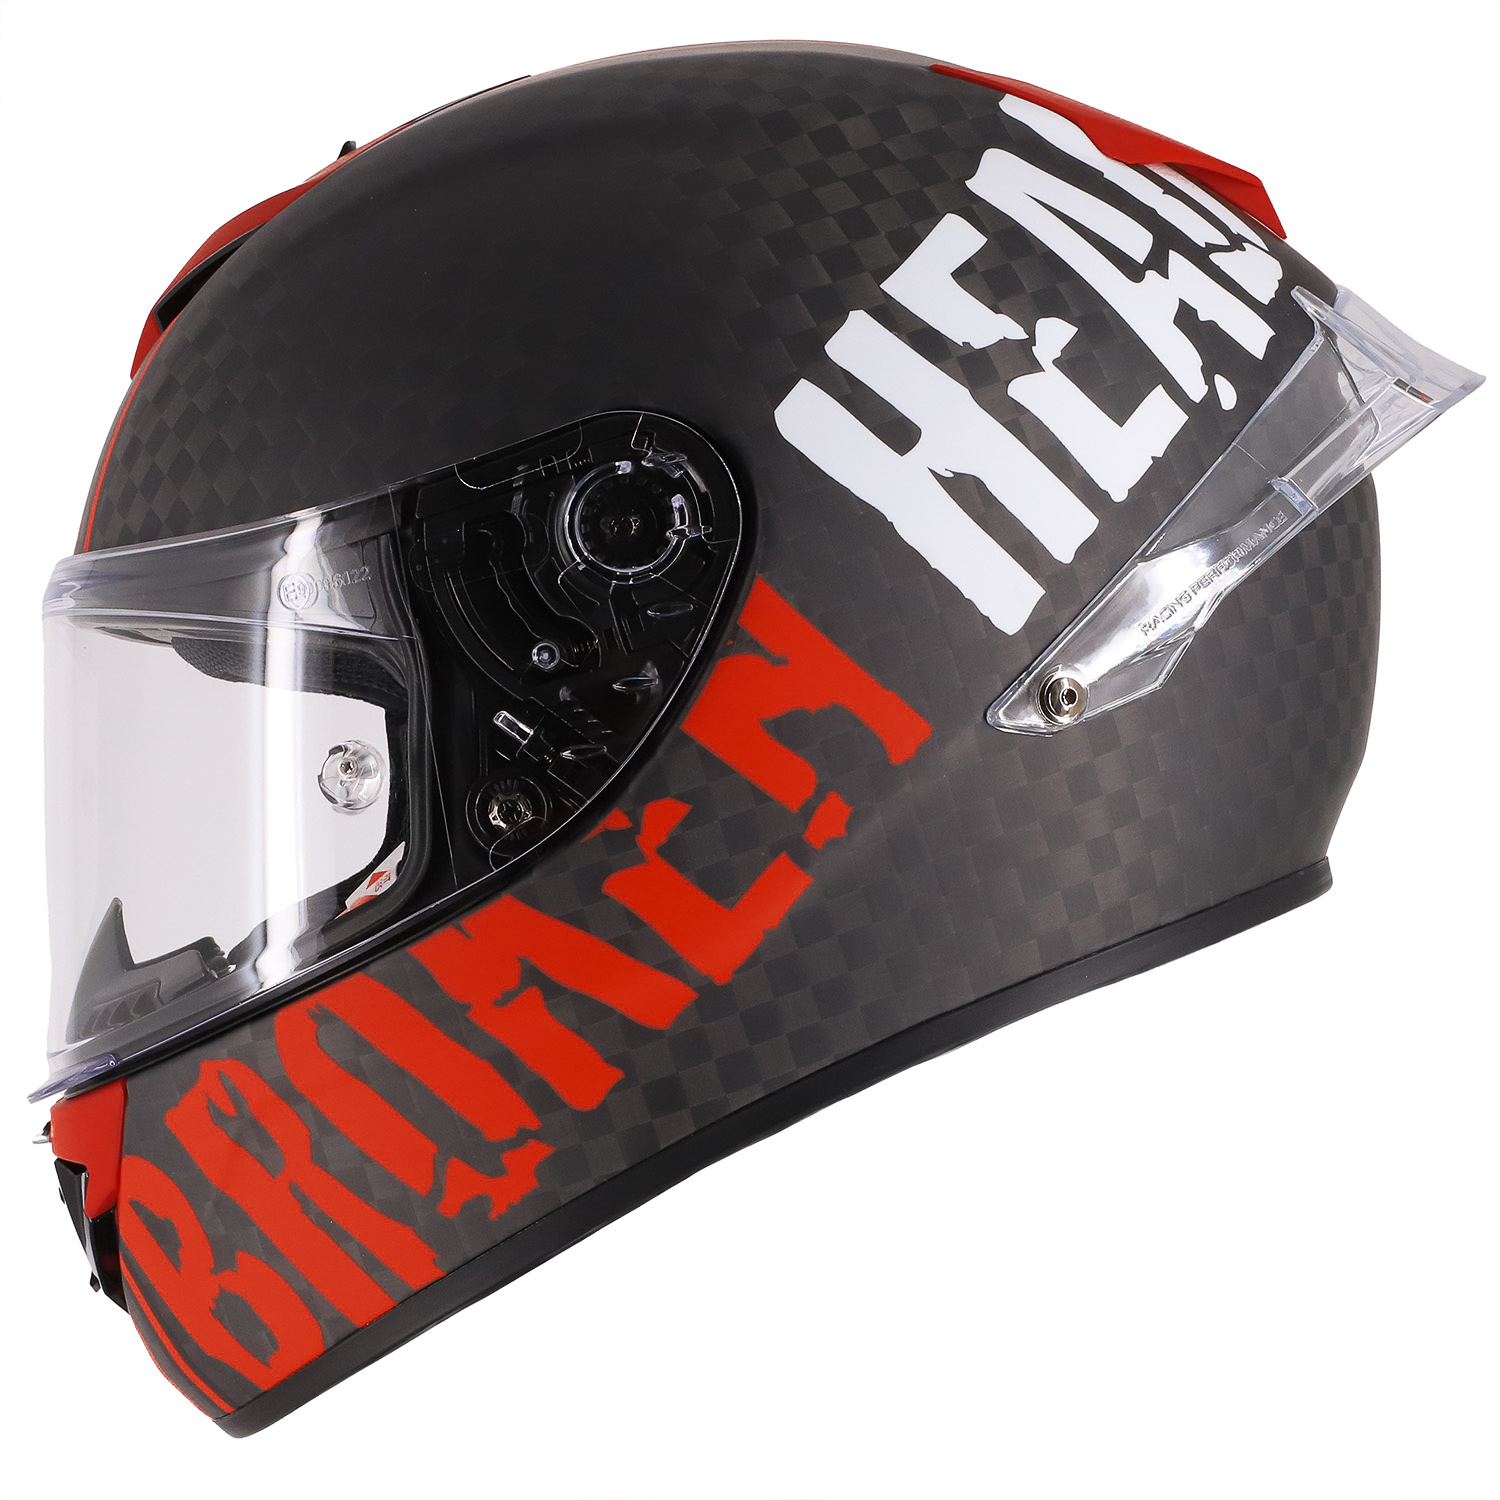 Broken Head Racing-Helm BeProud Race Pro Carbon Rot Mit 3 Visieren